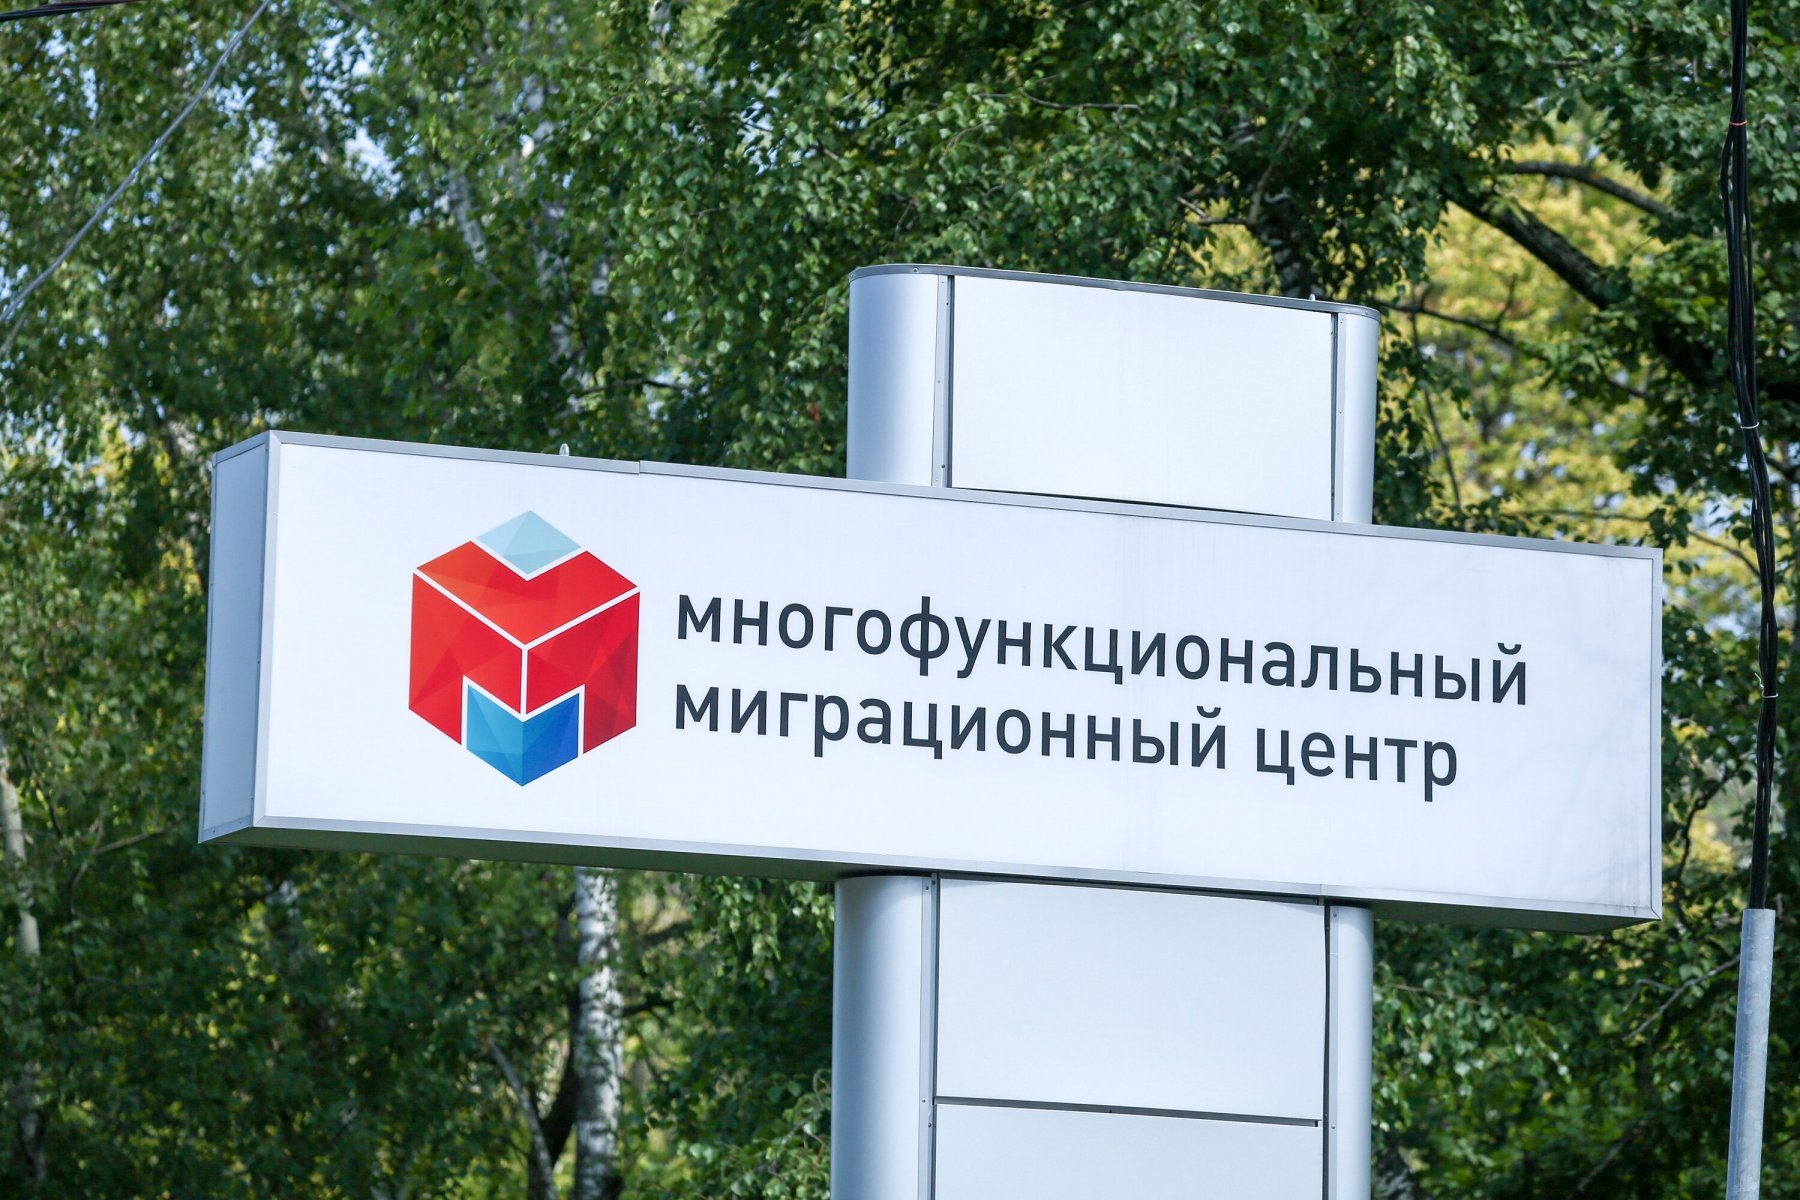 «Мы просим отменить решение об открытии миграционного центра» - жители Подольска записали обращение Путину 